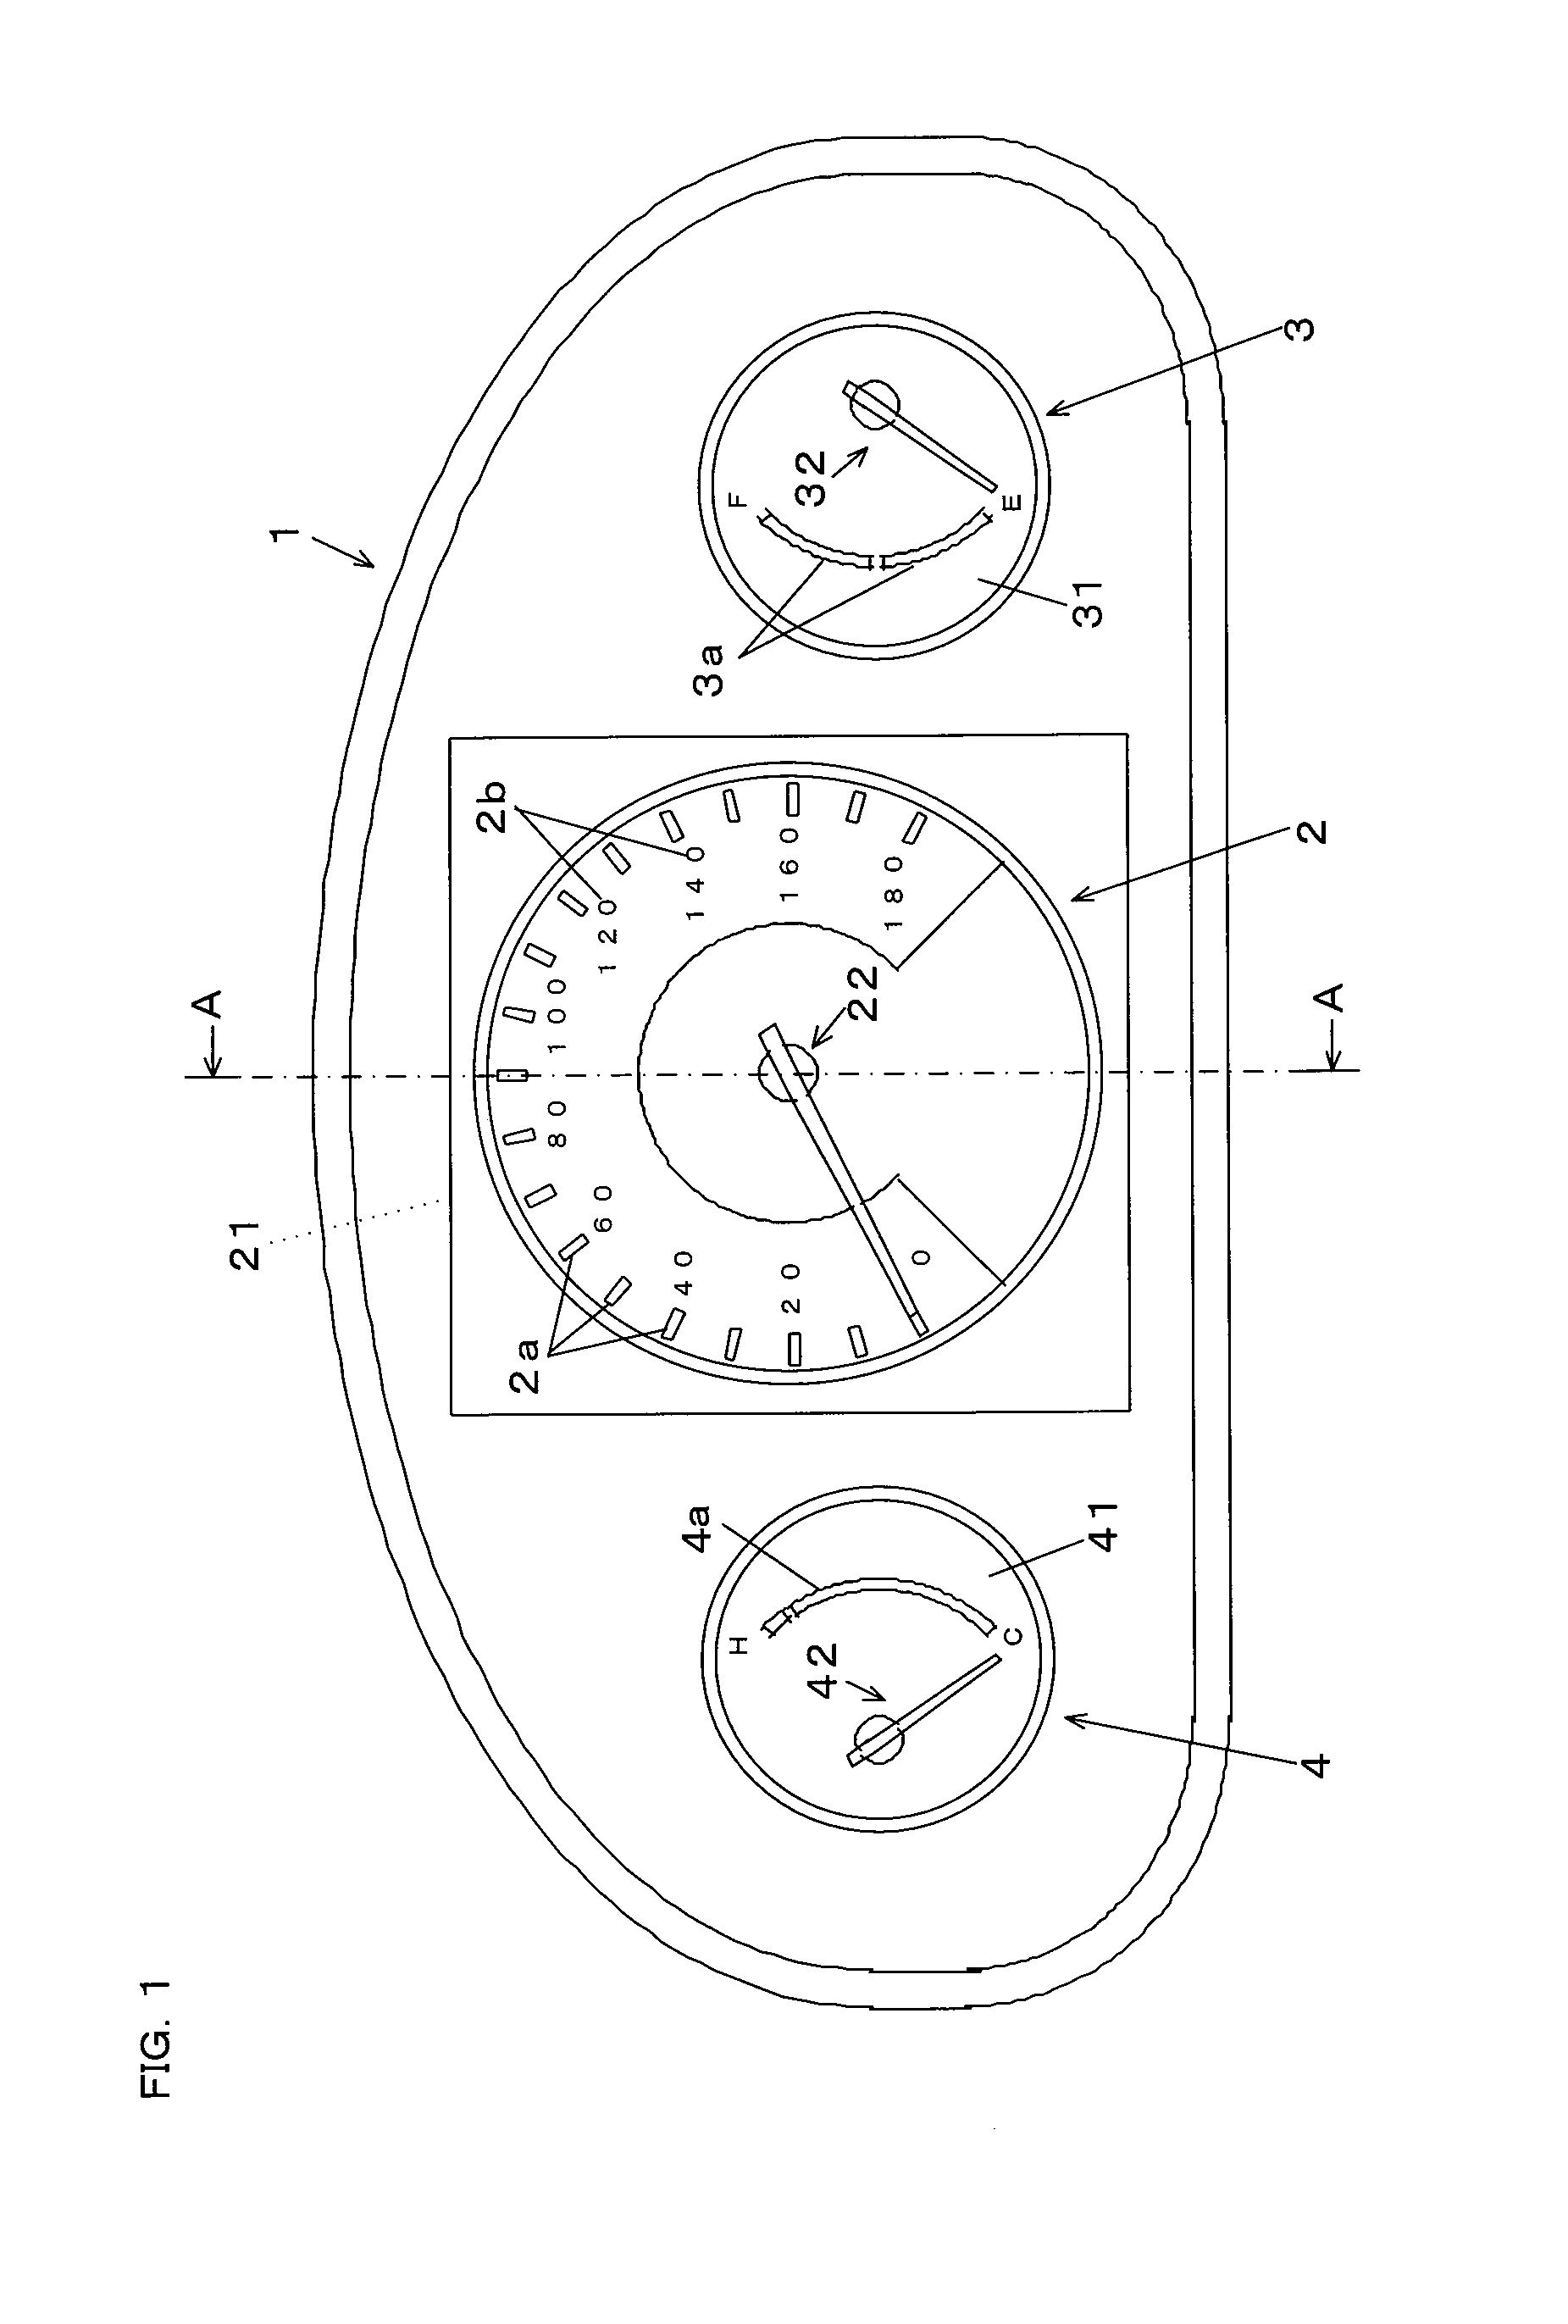 Indicator apparatus